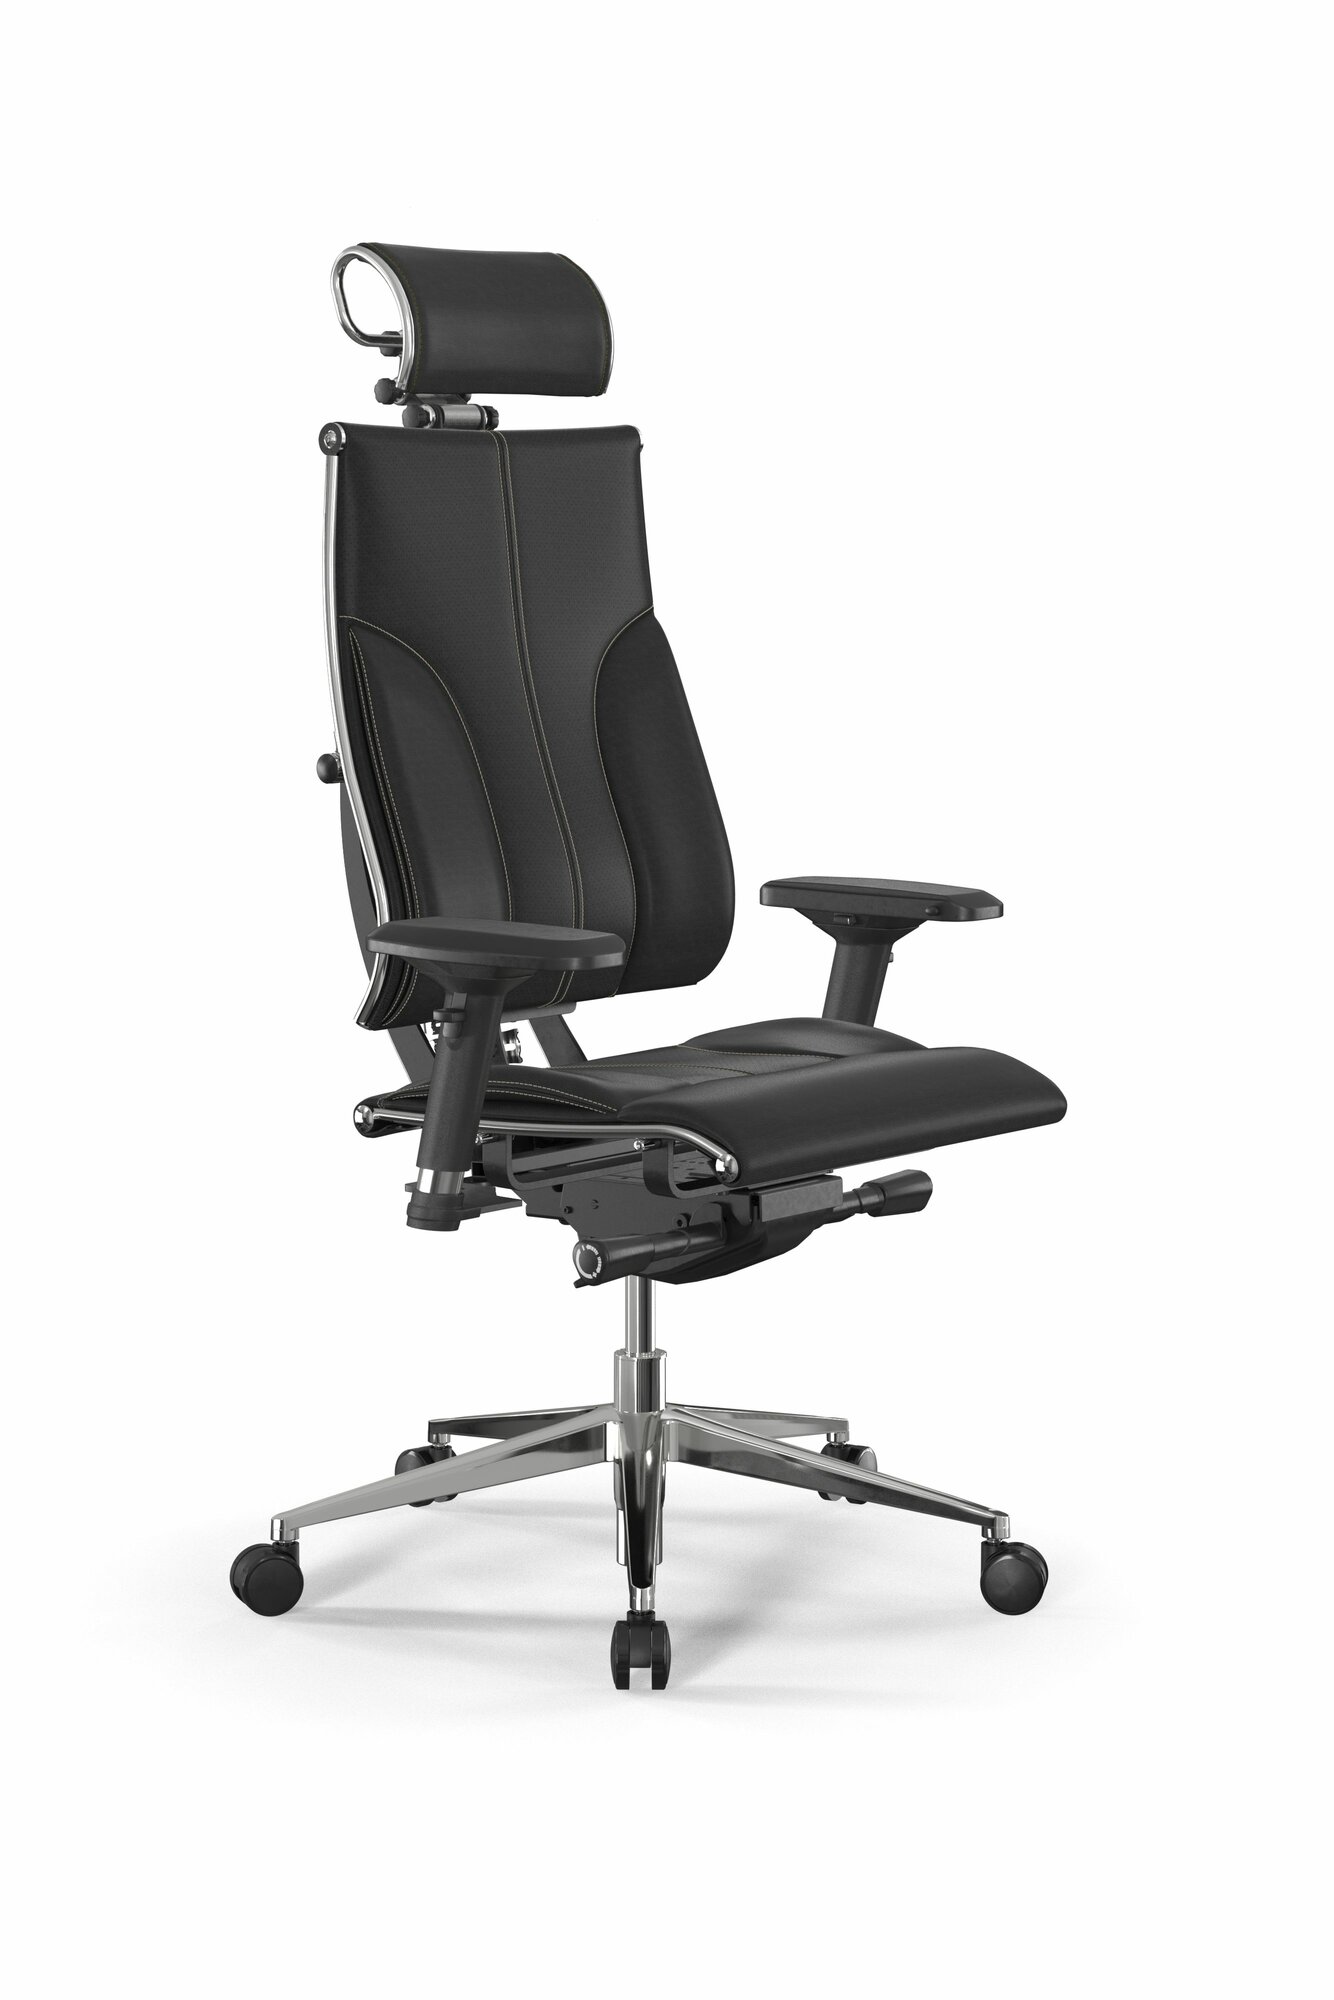 Позвоночное кресло метта Y 4DF B2-10D - Infinity /Kc06/Nc06/D04P/H2cL-3D(M26. B32. G25. W03) (Черный (бежевая строчка))